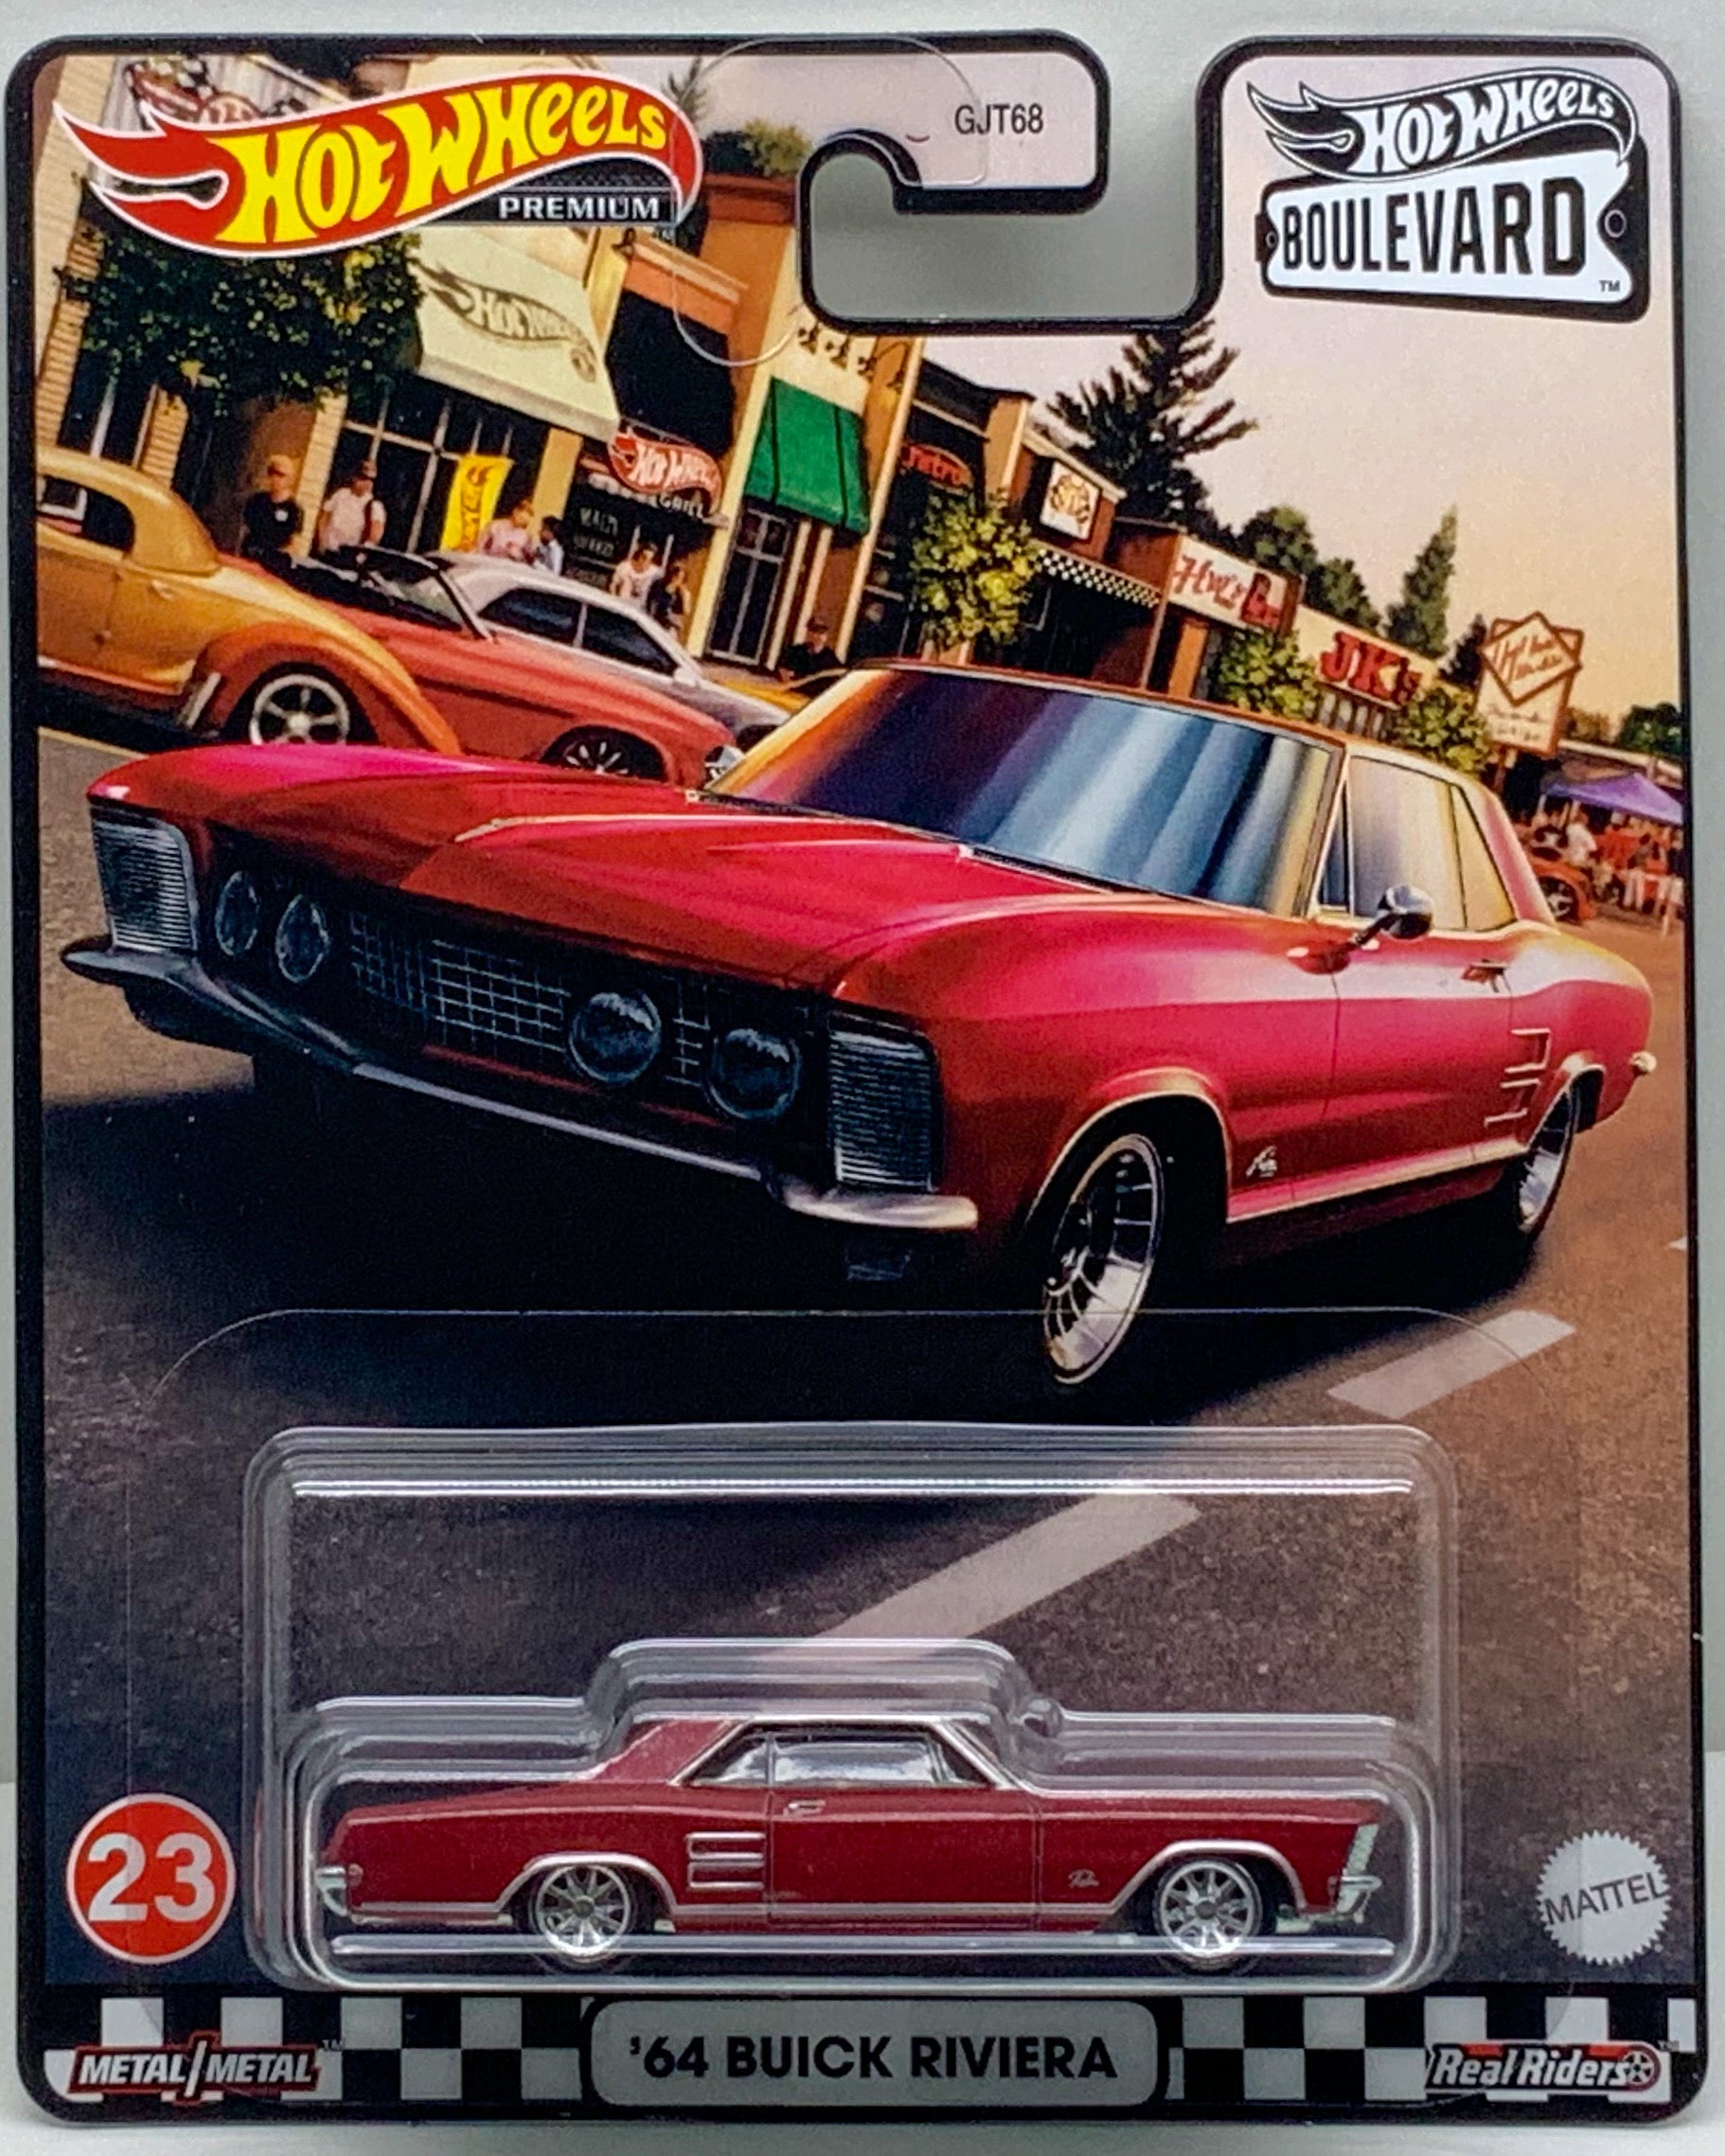 Buy at Tatoy Hot Wheels Boulevard '64 Buick Riviera number 23 Premium Real Riders Metal Mattel GJT68